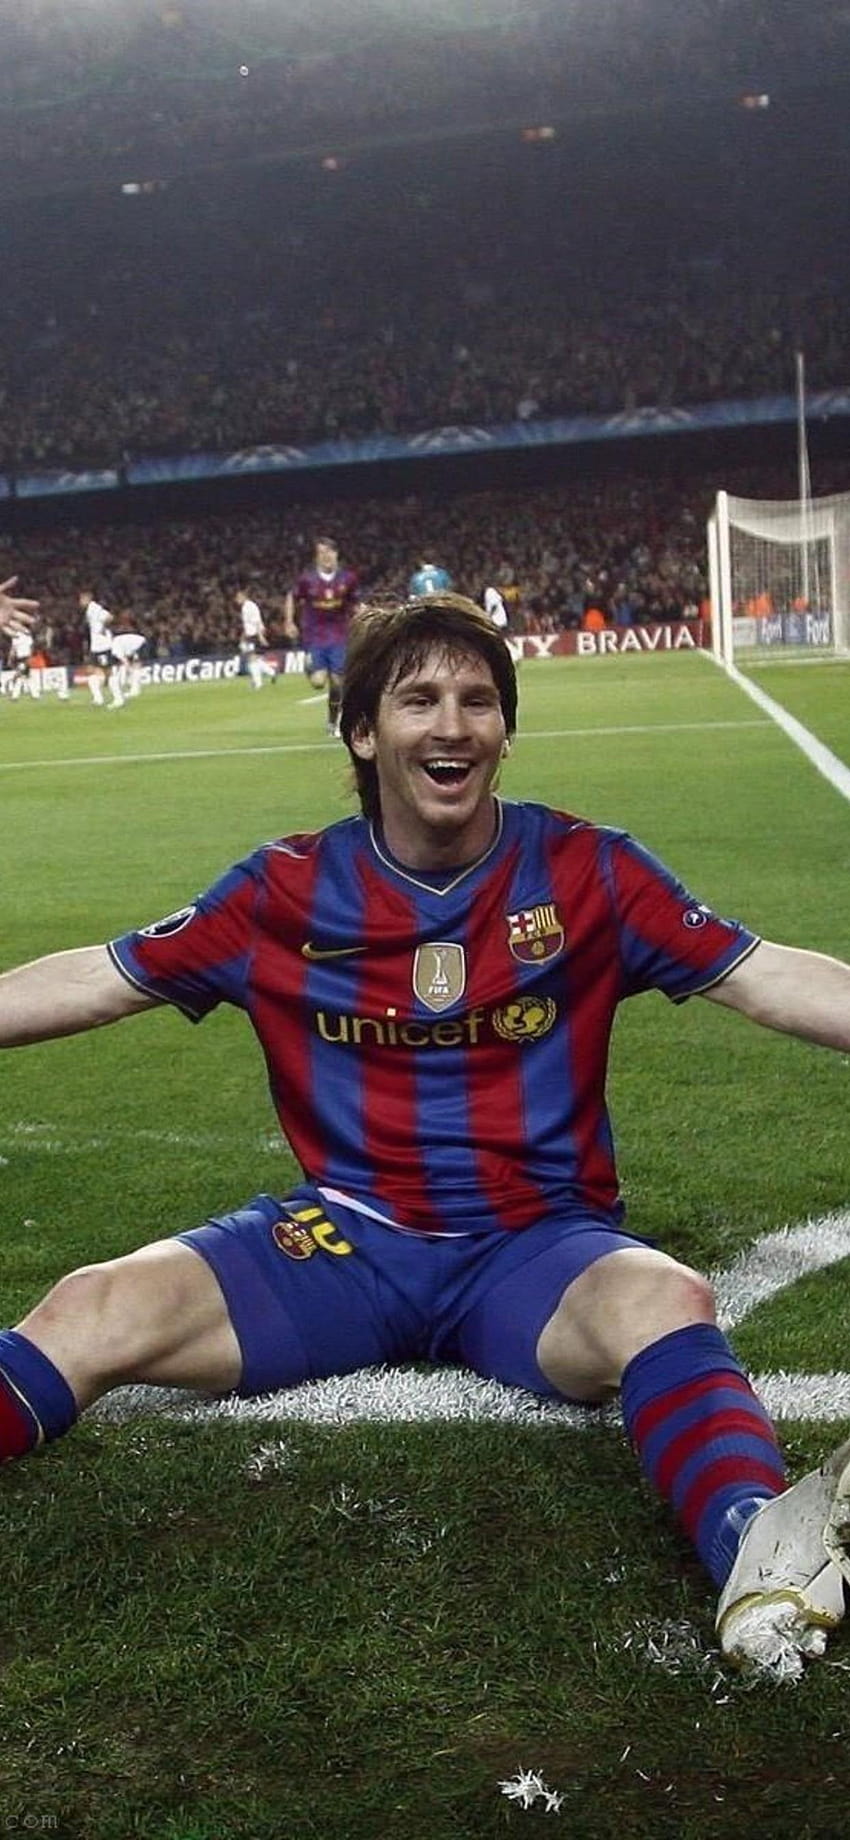 Ai là người đứng đầu danh sách những cầu thủ bóng đá vĩ đại nhất mọi thời đại? Đúng rồi, đó là Leo Messi. Dù bạn là fan của đội nào thì chắc chắn bạn sẽ phải hâm mộ tài năng của anh ấy sau khi xem qua những bức ảnh đẹp về Messi.